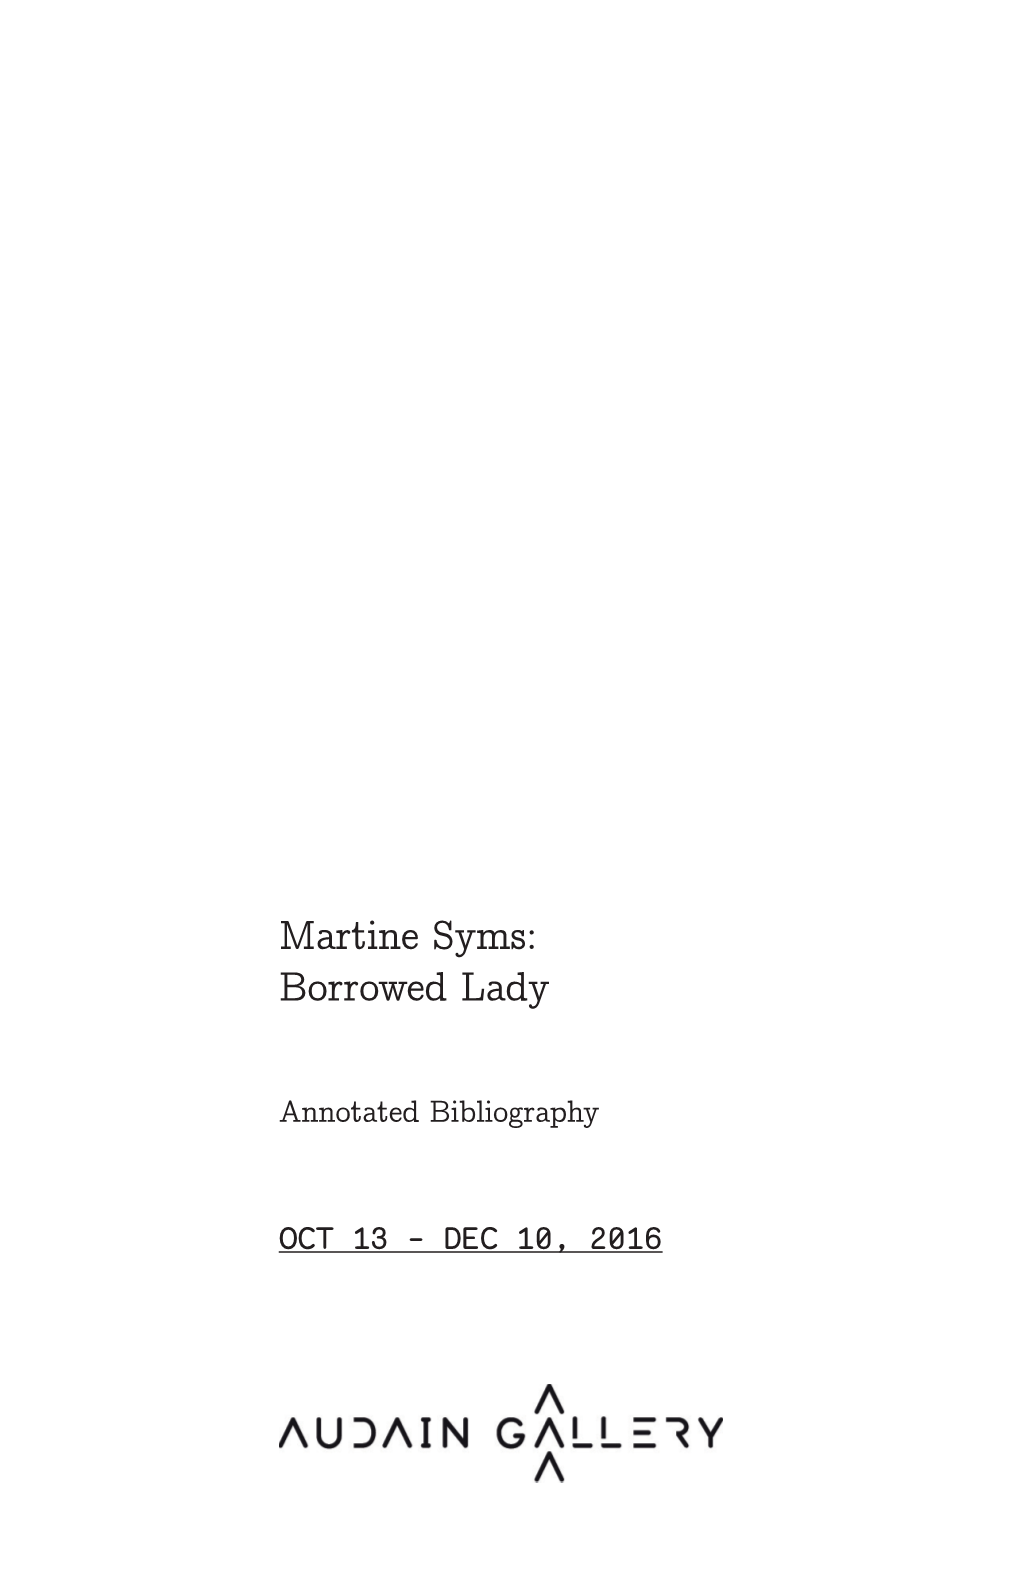 Martine Syms: Borrowed Lady